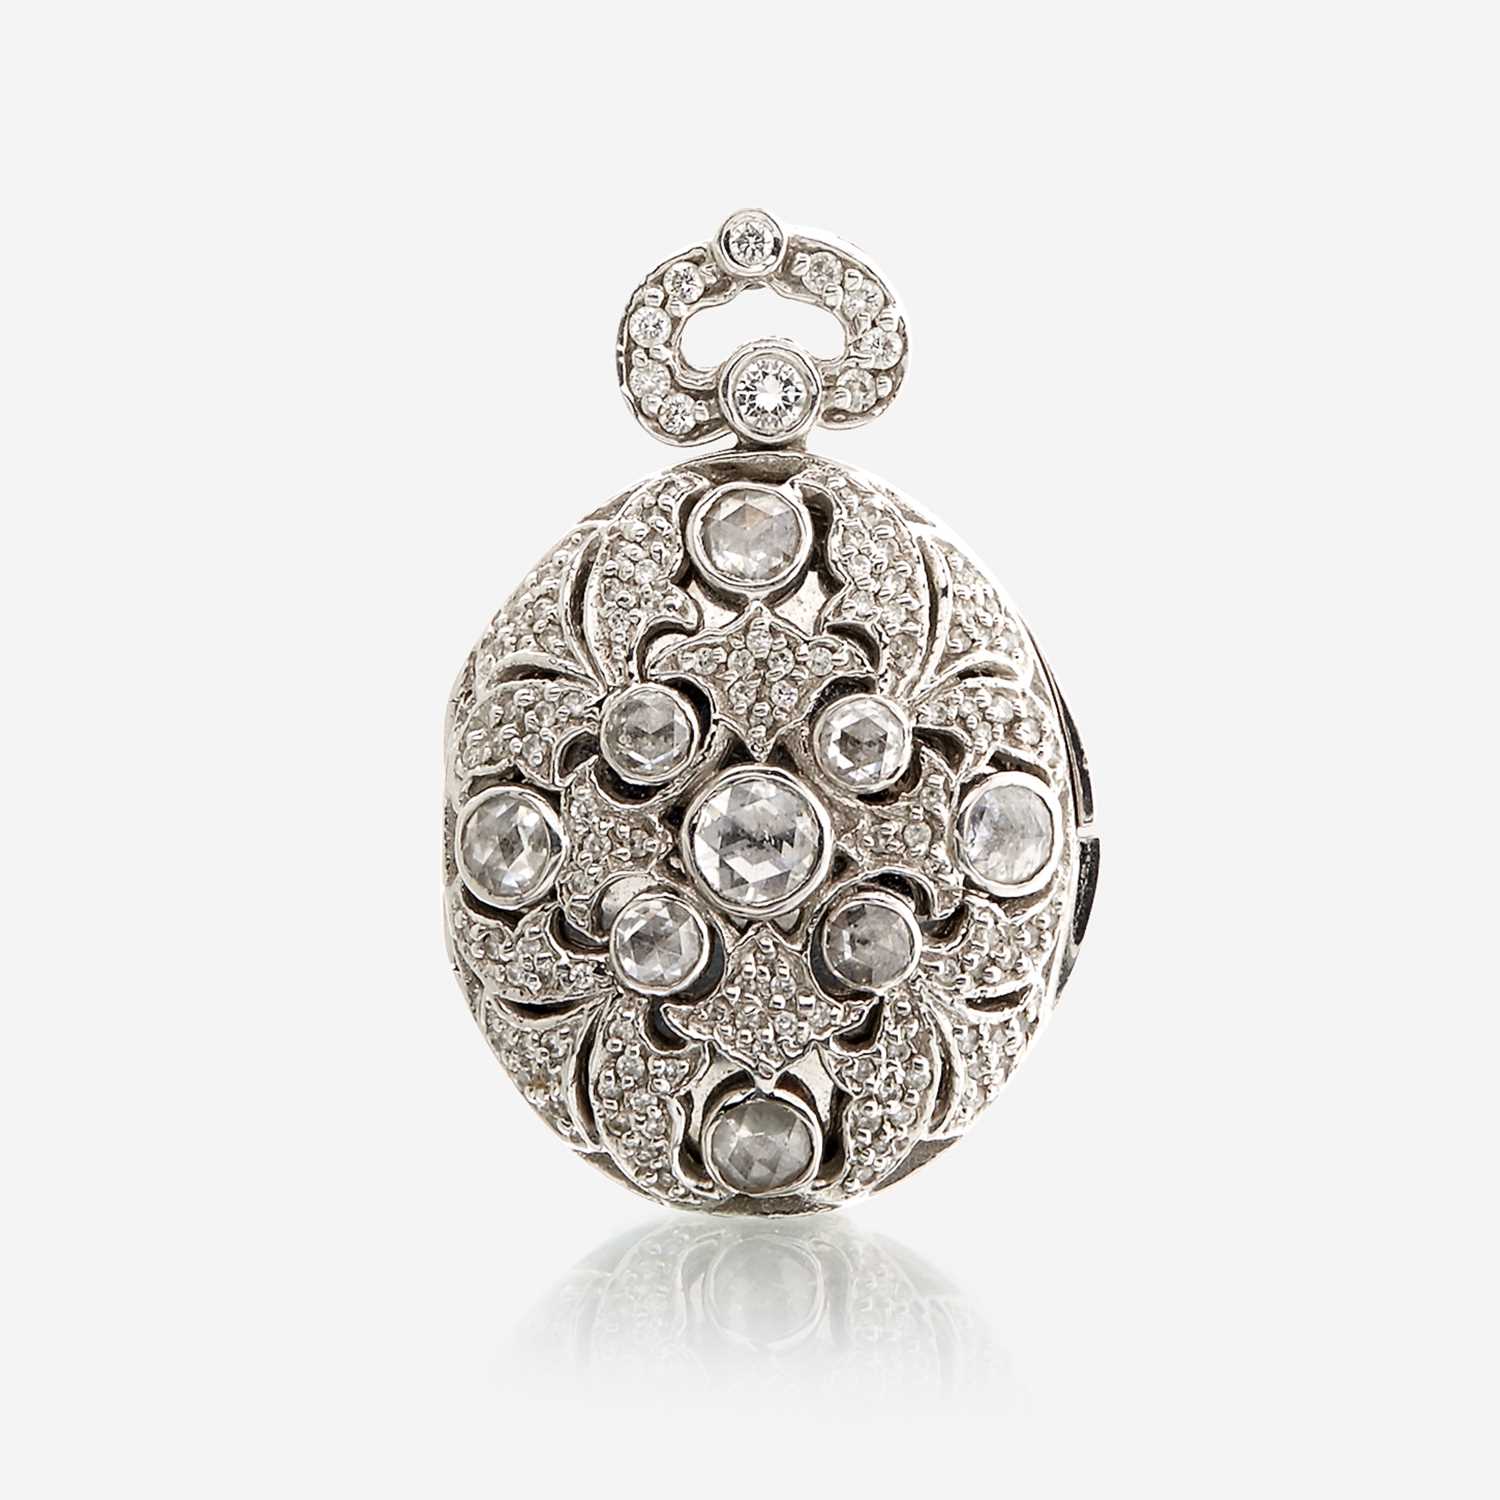 Lot 135 - An eighteen karat white gold and diamond pendant locket